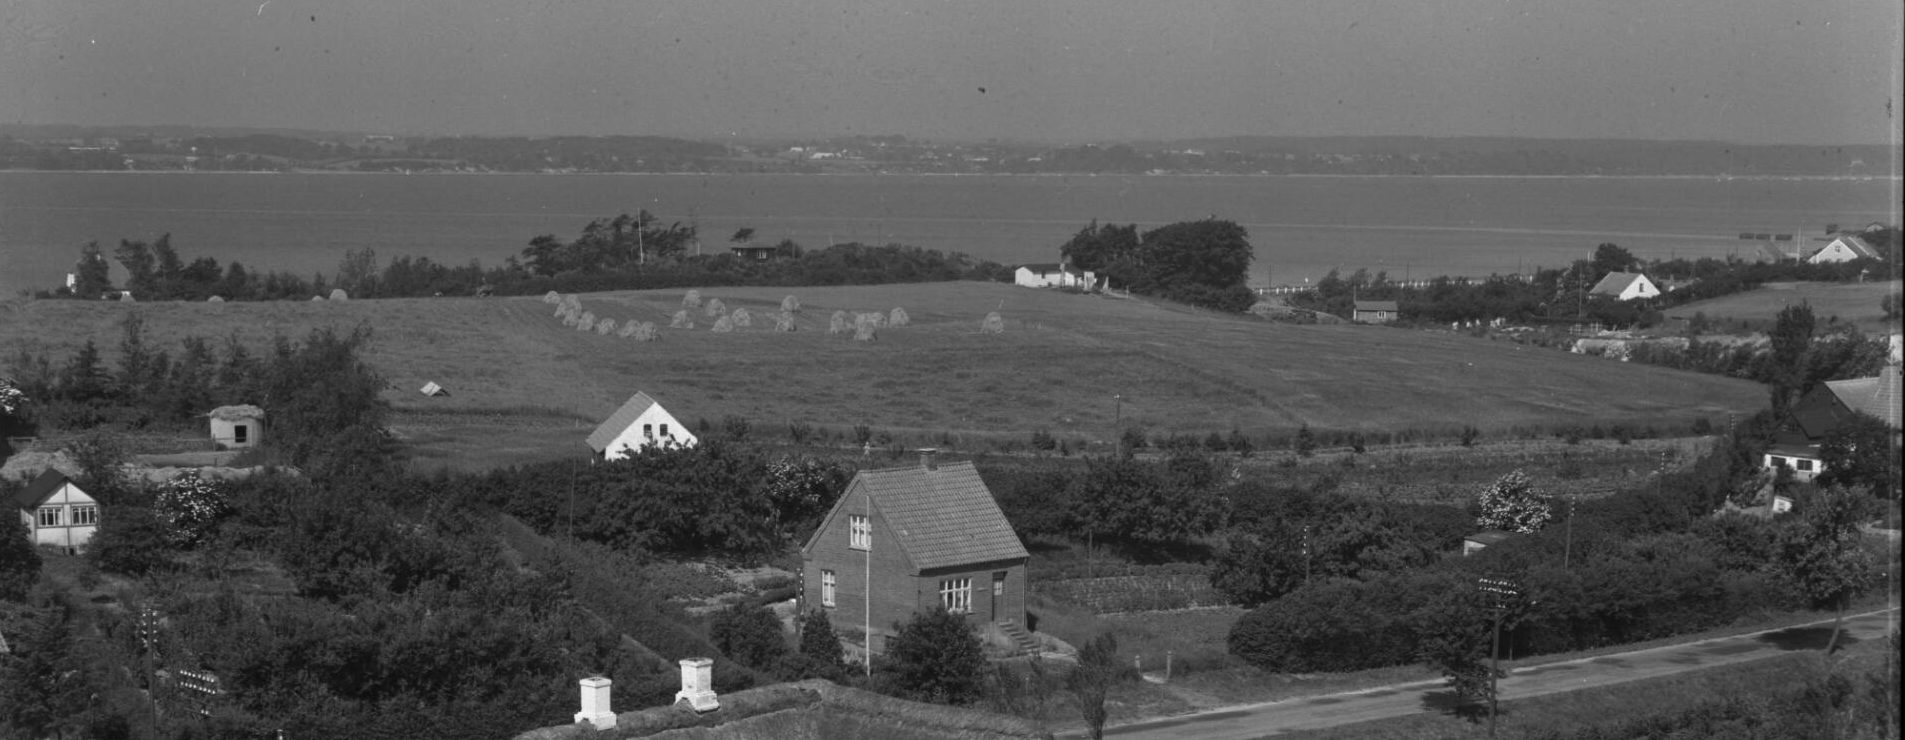 Møllebakken 1951, set fra Strib Landevej